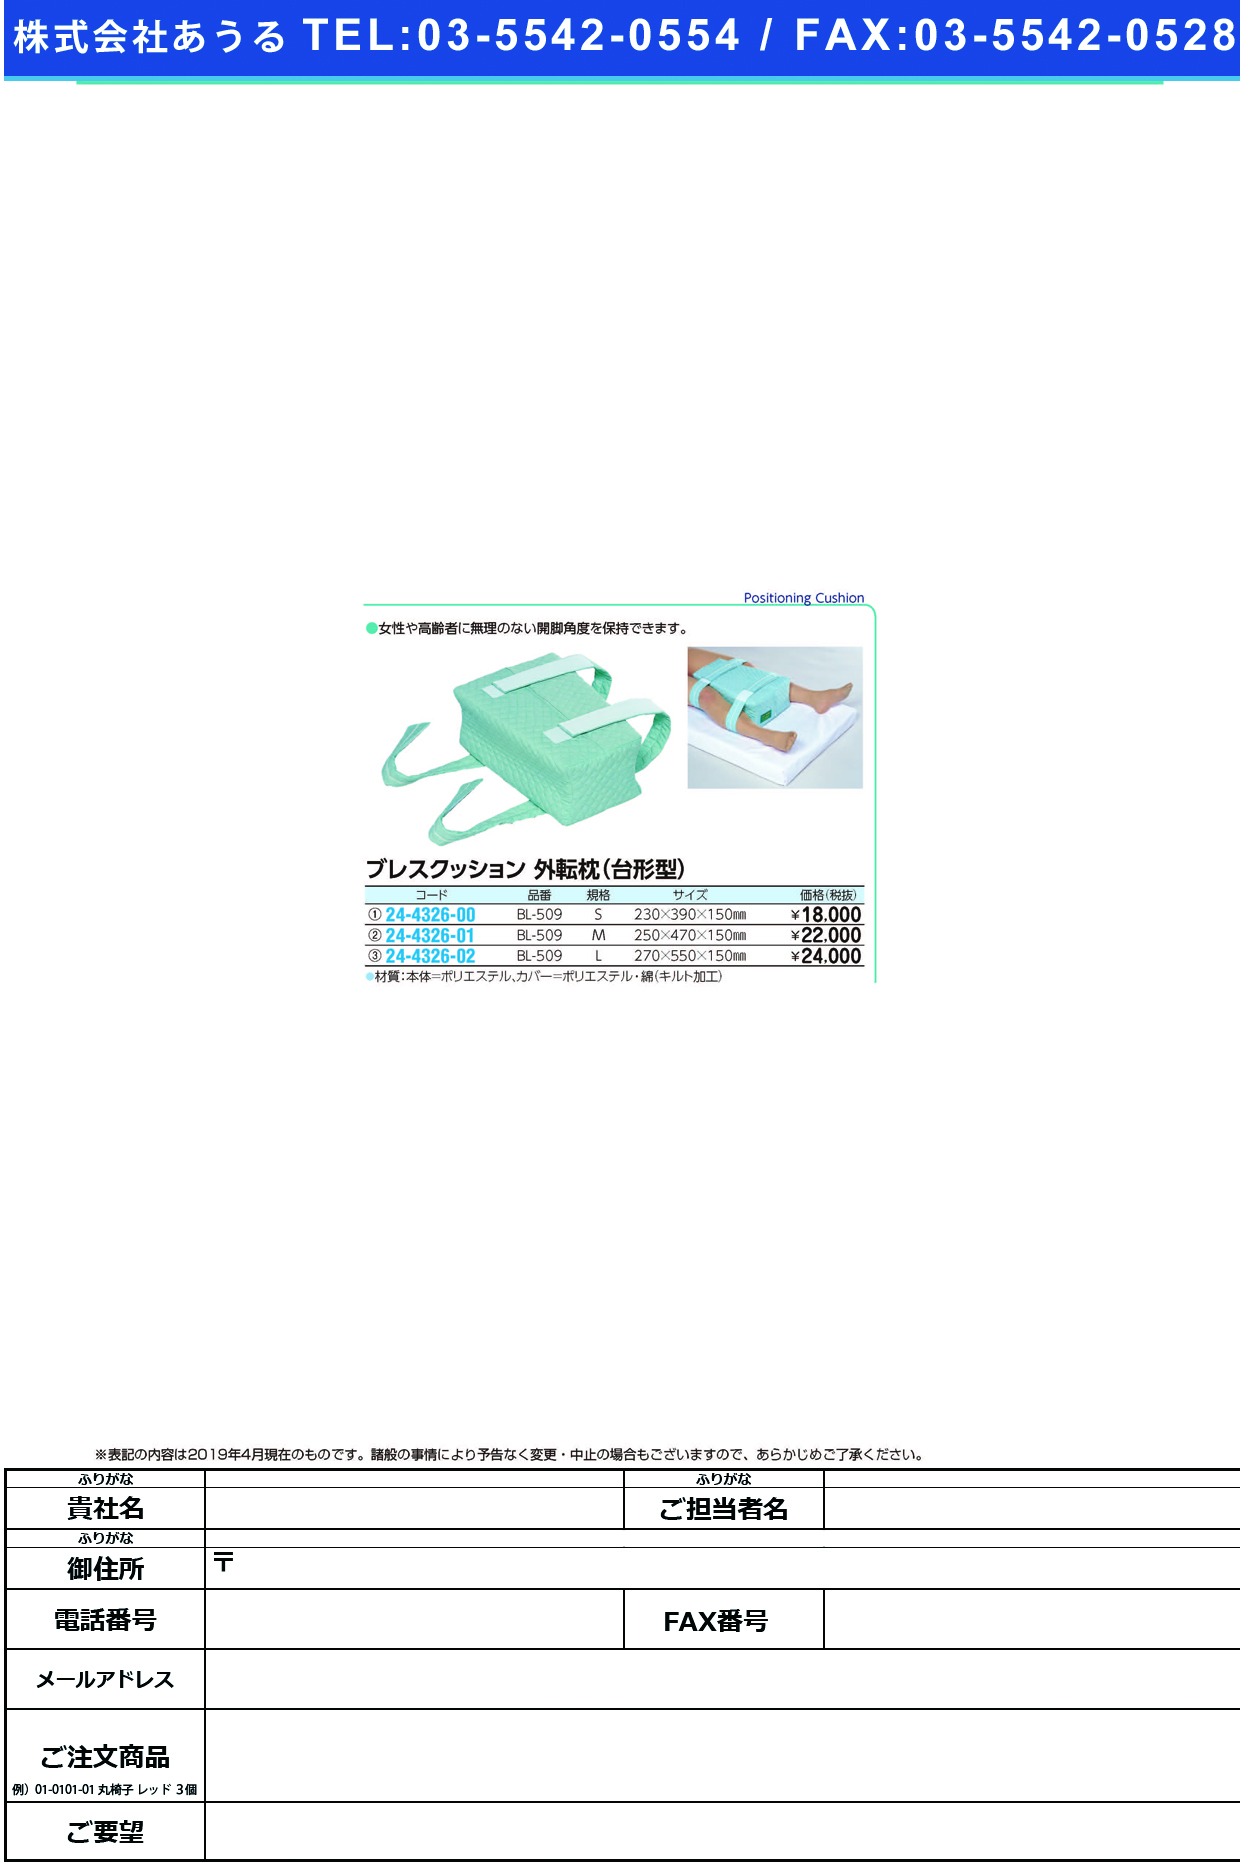 (24-4326-02)ブレスクッション（外転枕・台形型） BL-509(L) ﾌﾞﾚｽｸｯｼｮﾝ(ｶﾞｲﾃﾝﾏｸﾗ)【1個単位】【2019年カタログ商品】